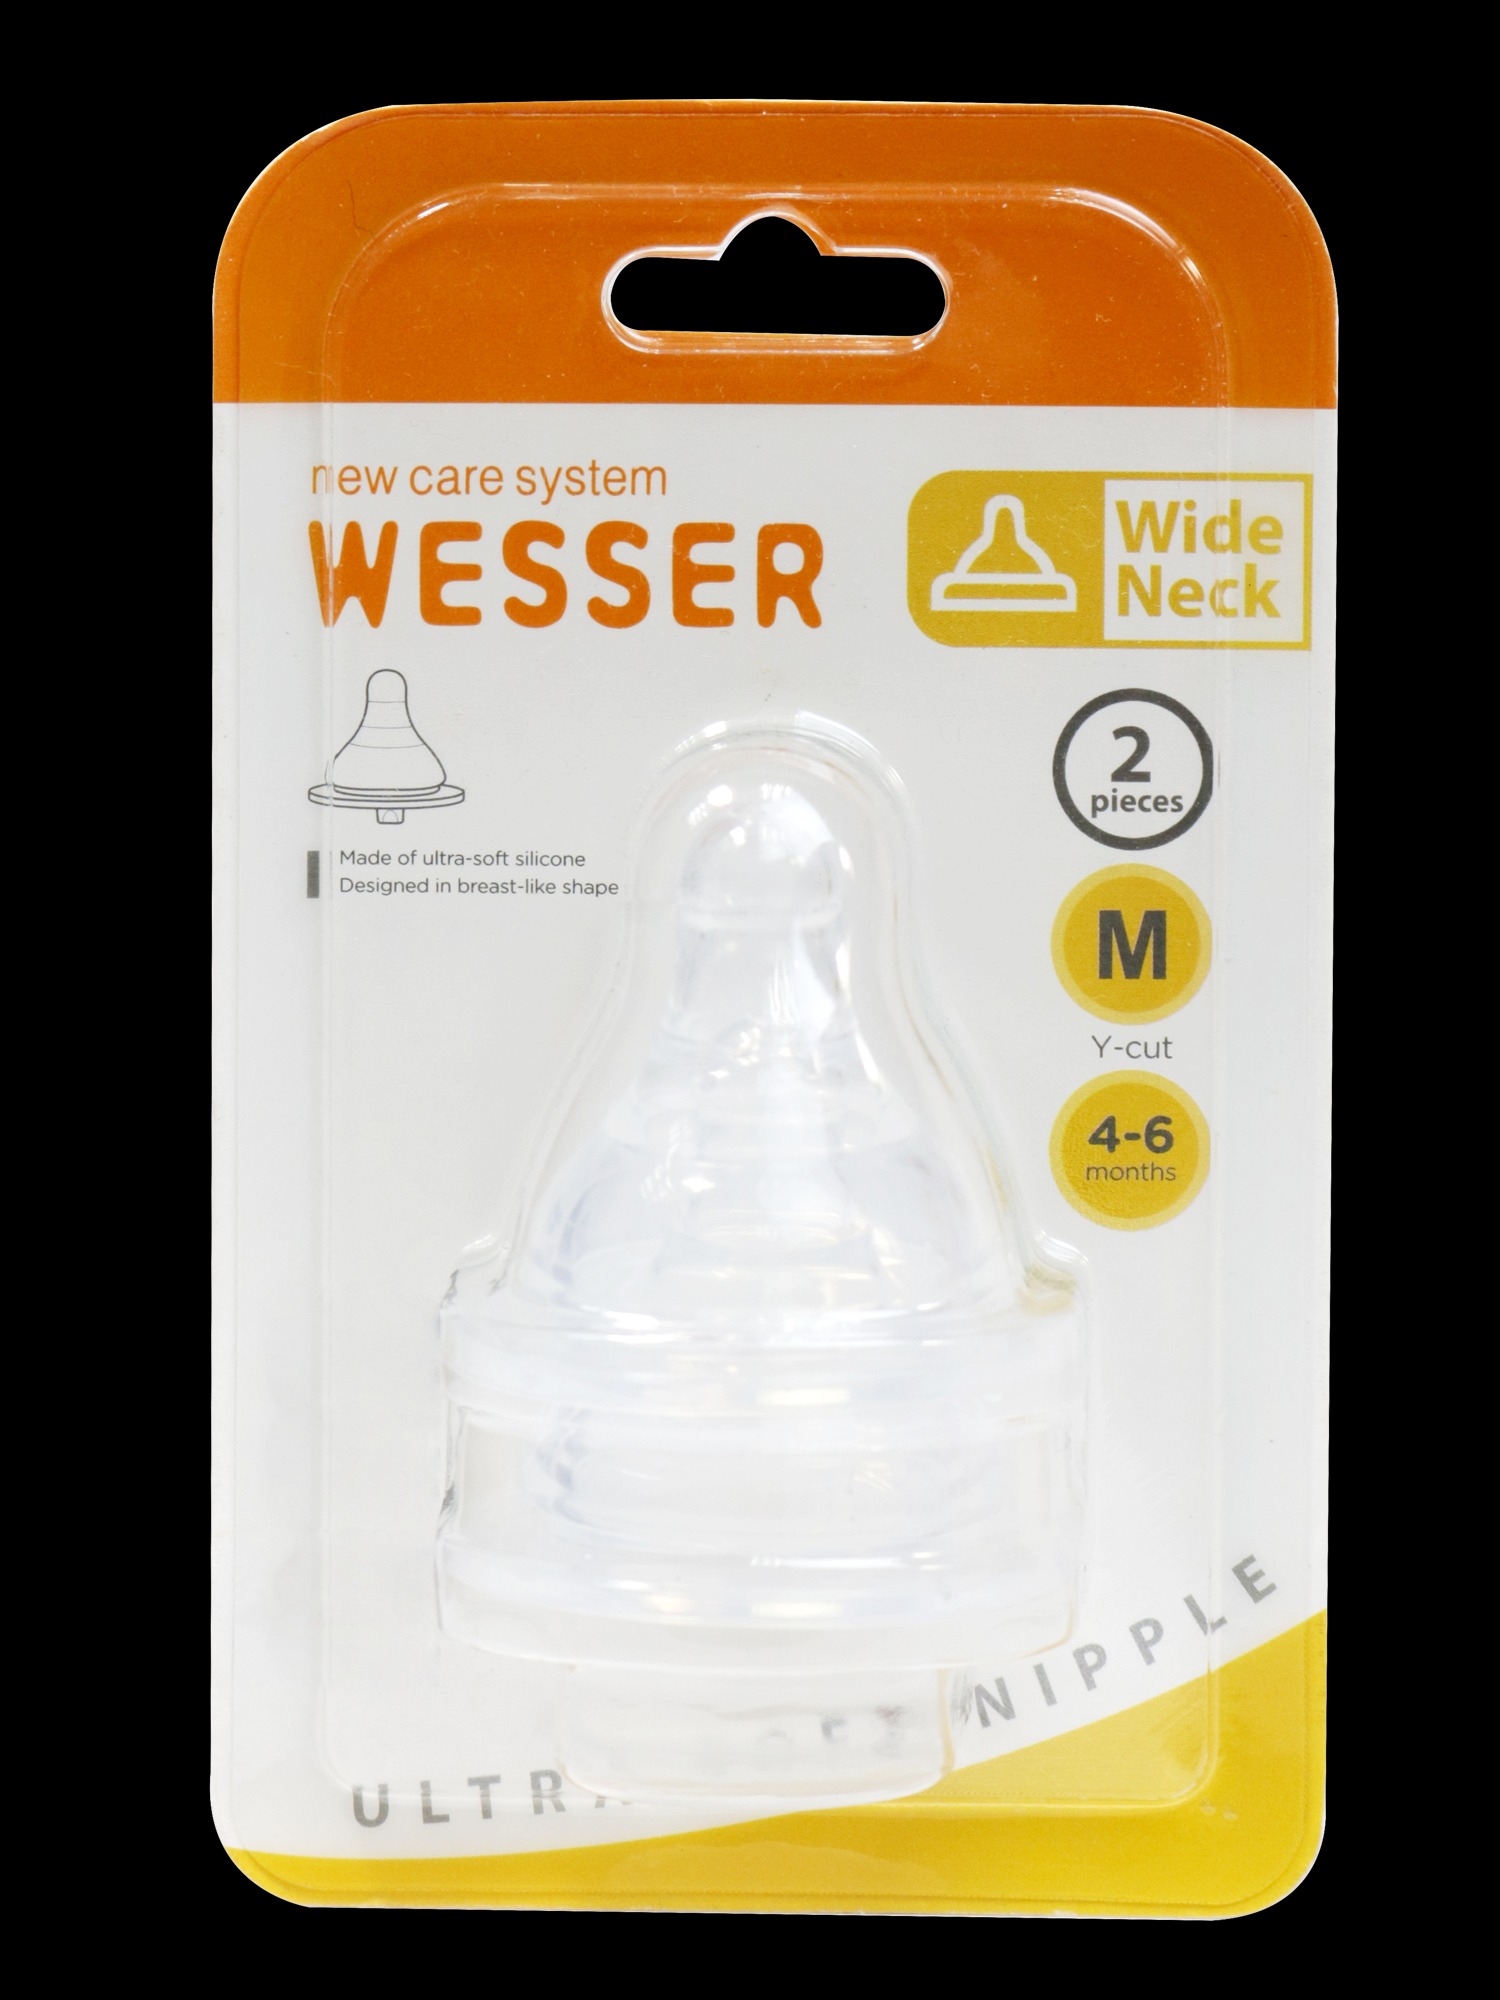 Ty thay bình sữa Wesser cổ rộng size- 2 cái vỹ